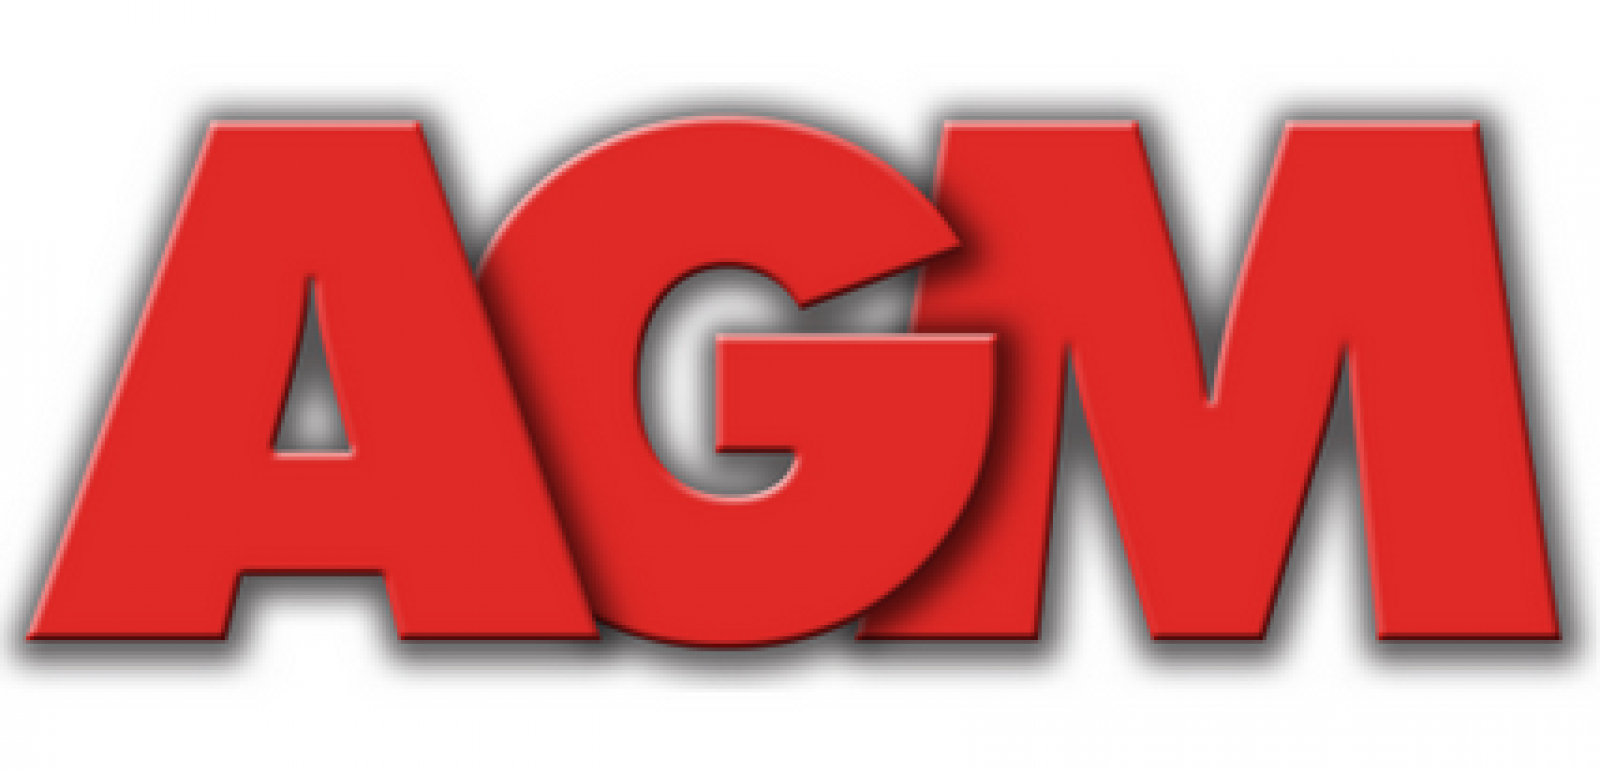 24 reg. AGM лого. AGM надпись. AGM Group логотип. АГМ Партс лого.